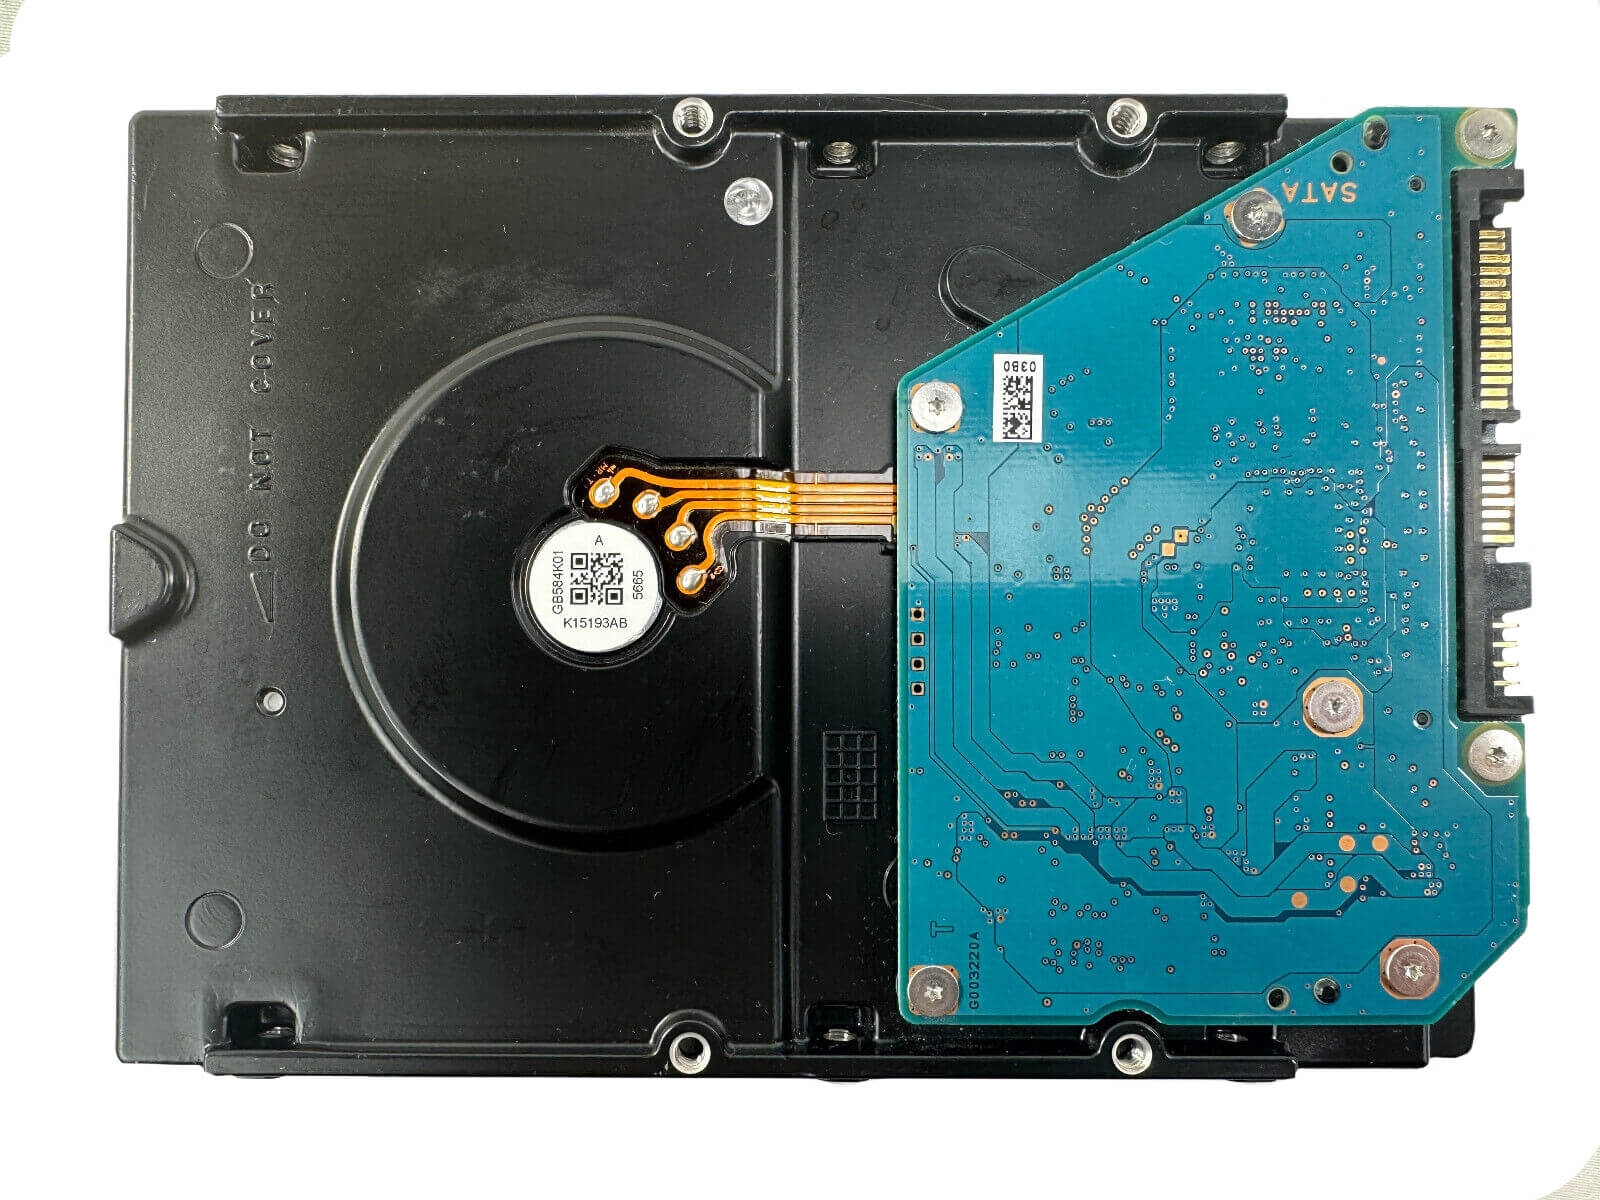 HPE 739333-004 4TB SATA 6Gb/s 7.2K rpm 3.5" LFF MDL 512n HDD Hard Disk Drive